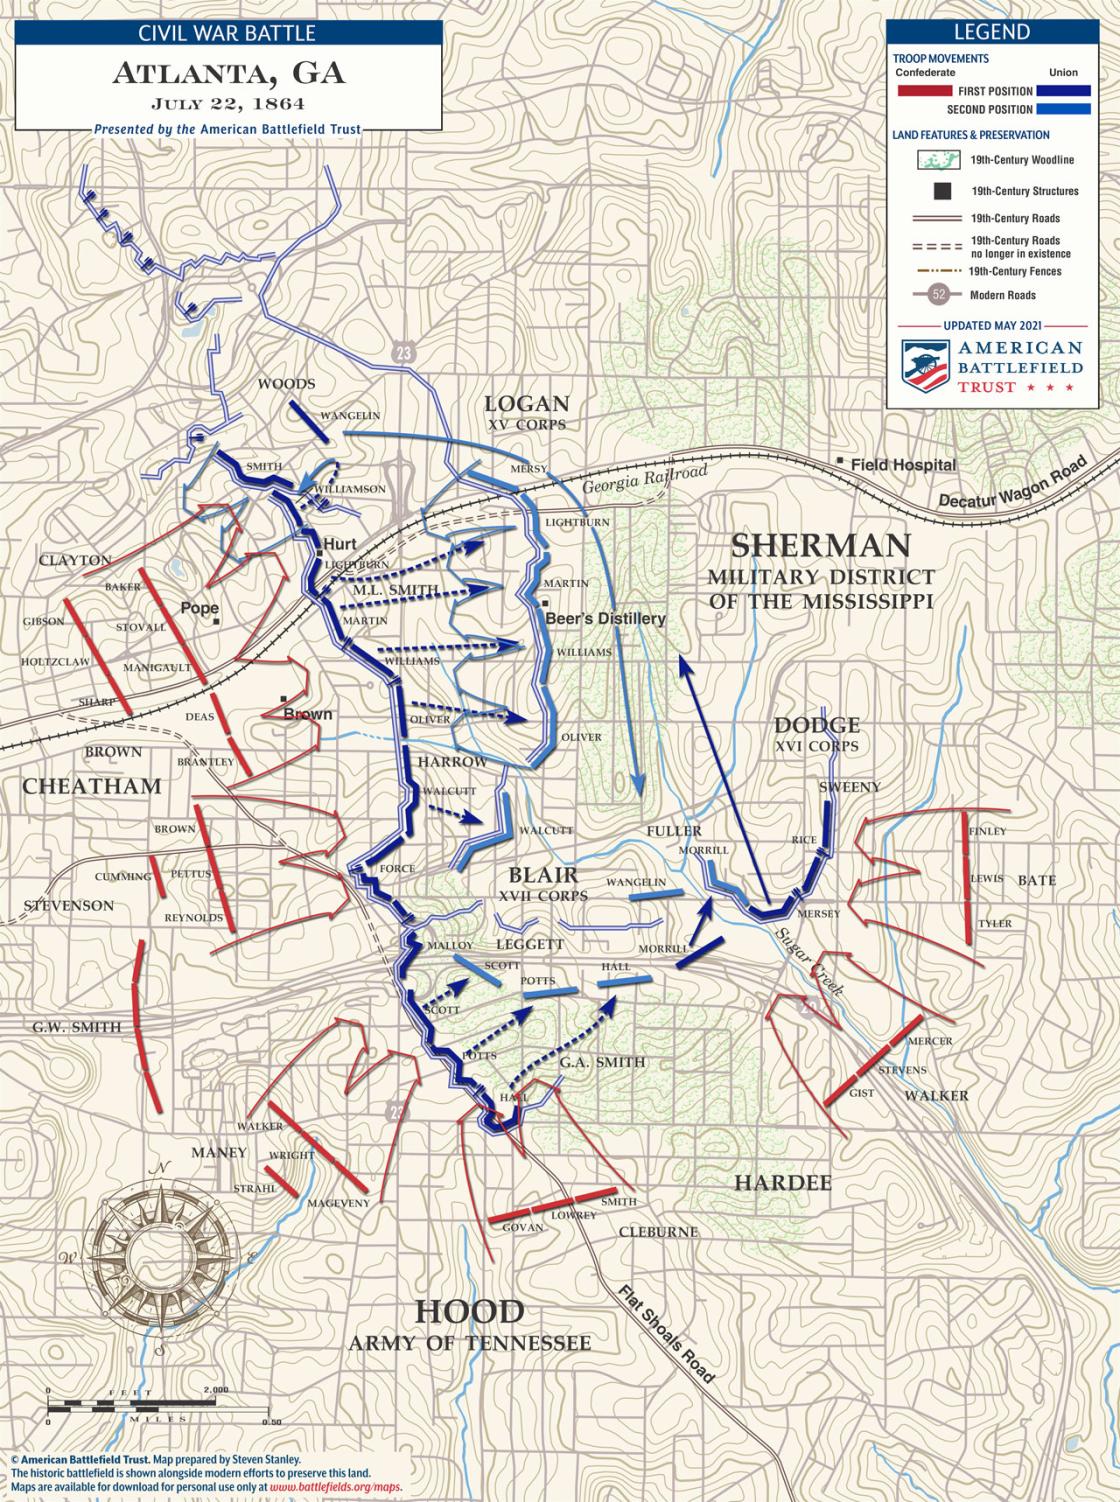 Atlanta - July 22, 1864 Battle Map